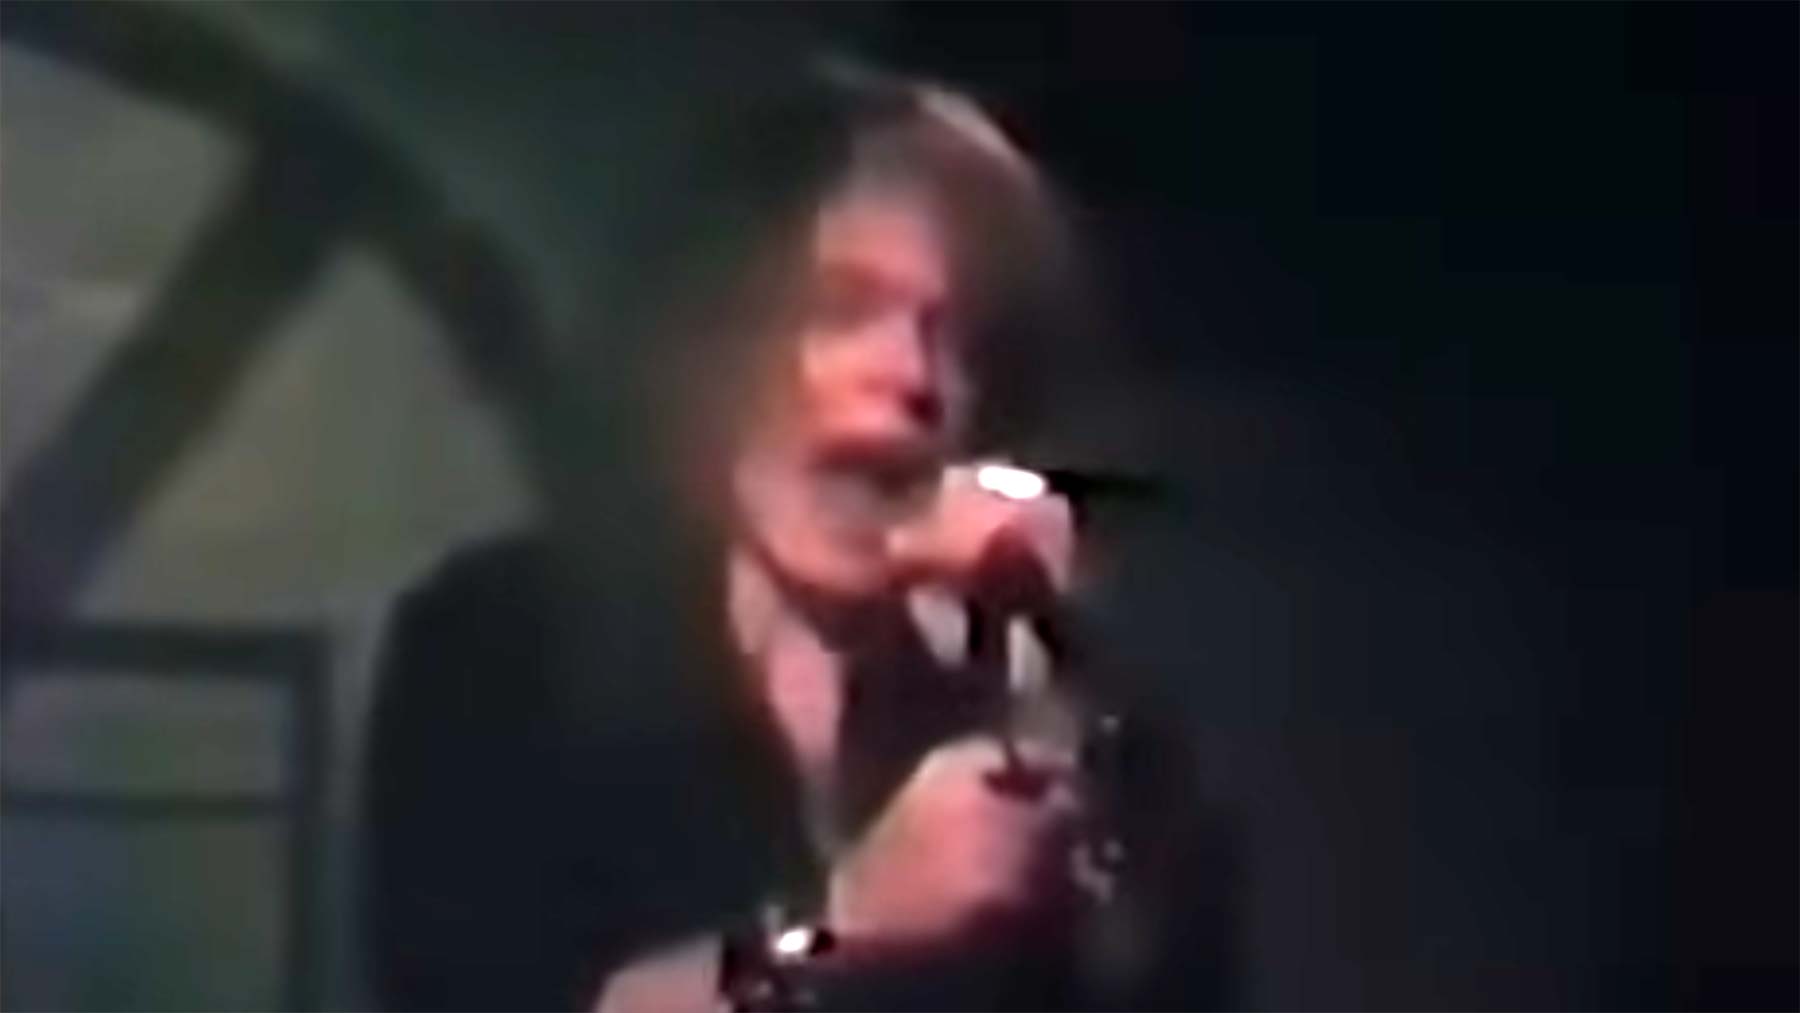 Auftritt von Guns N' Roses, bevor sie berühmt geworden sind (1985) guns-n-roses-1985-auftritt-bevor-sie-beruehmt-waren 